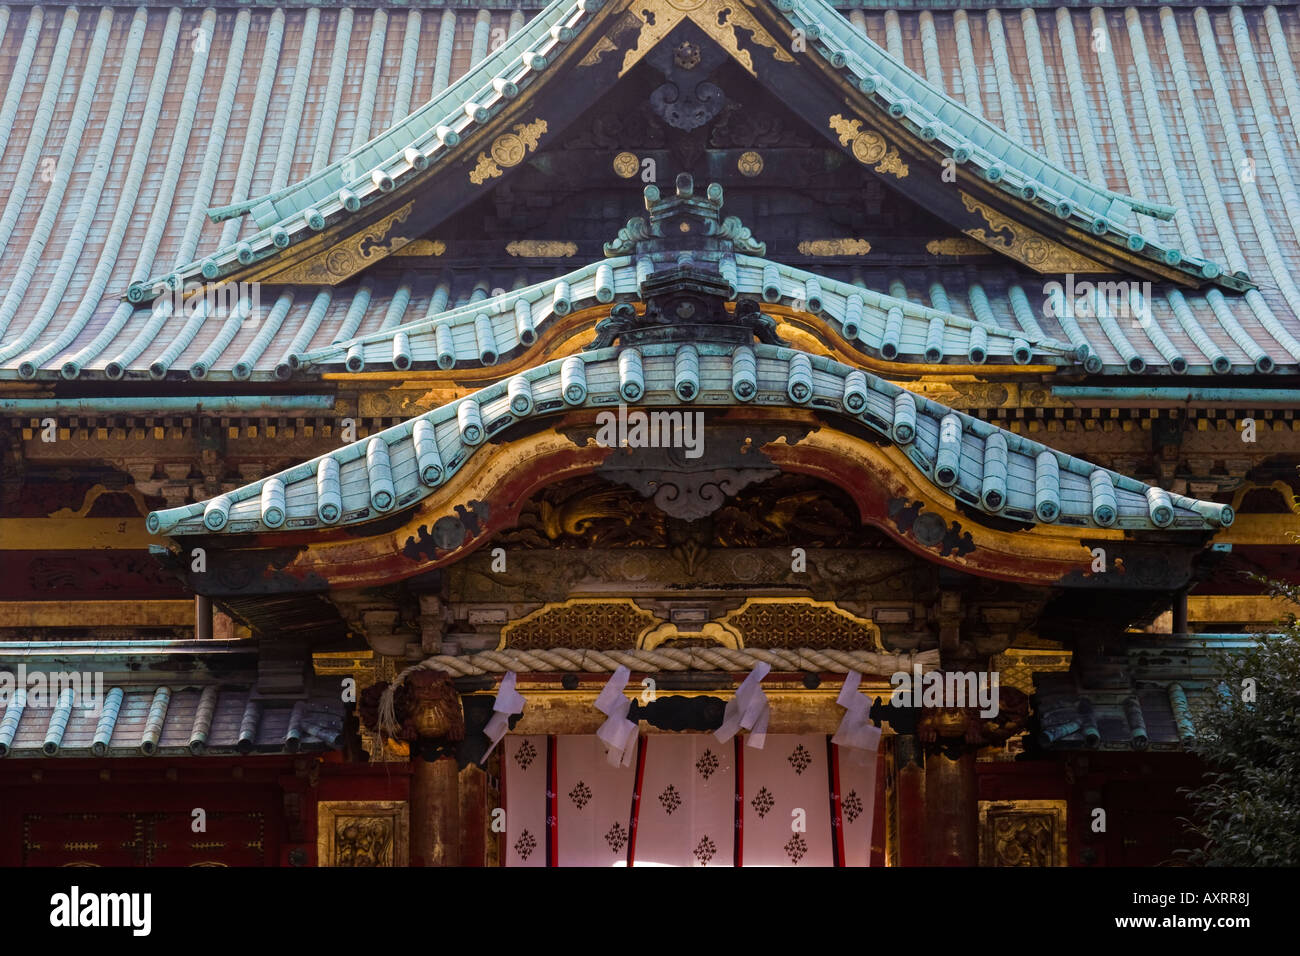 Gros plan du pavillon japonais traditionnel avec de la feuille d'or au-dessus de l'entrée dans le parc Ueno Toshogu Tokyo Japon Banque D'Images